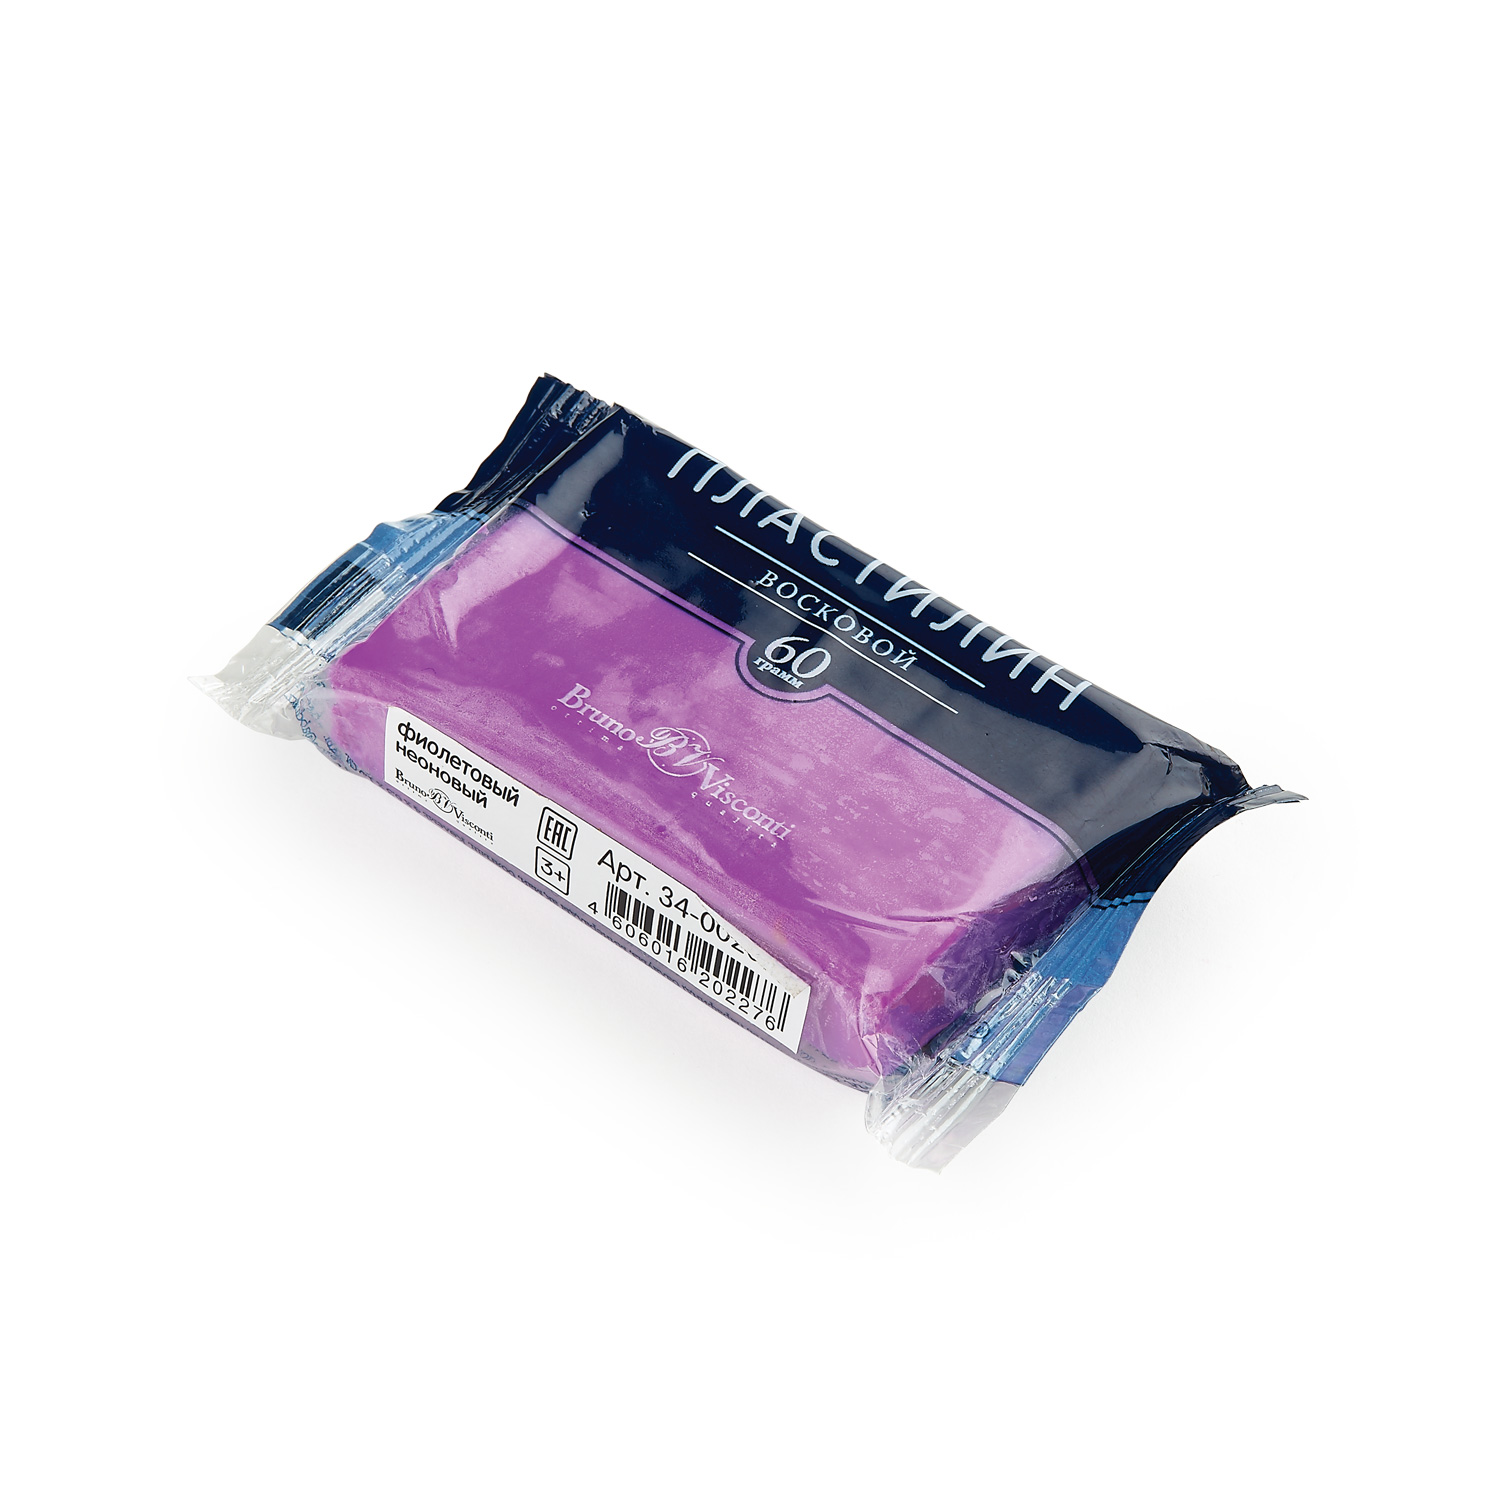 Пластилин штучный 60гр фиолетовый неон BV восковой